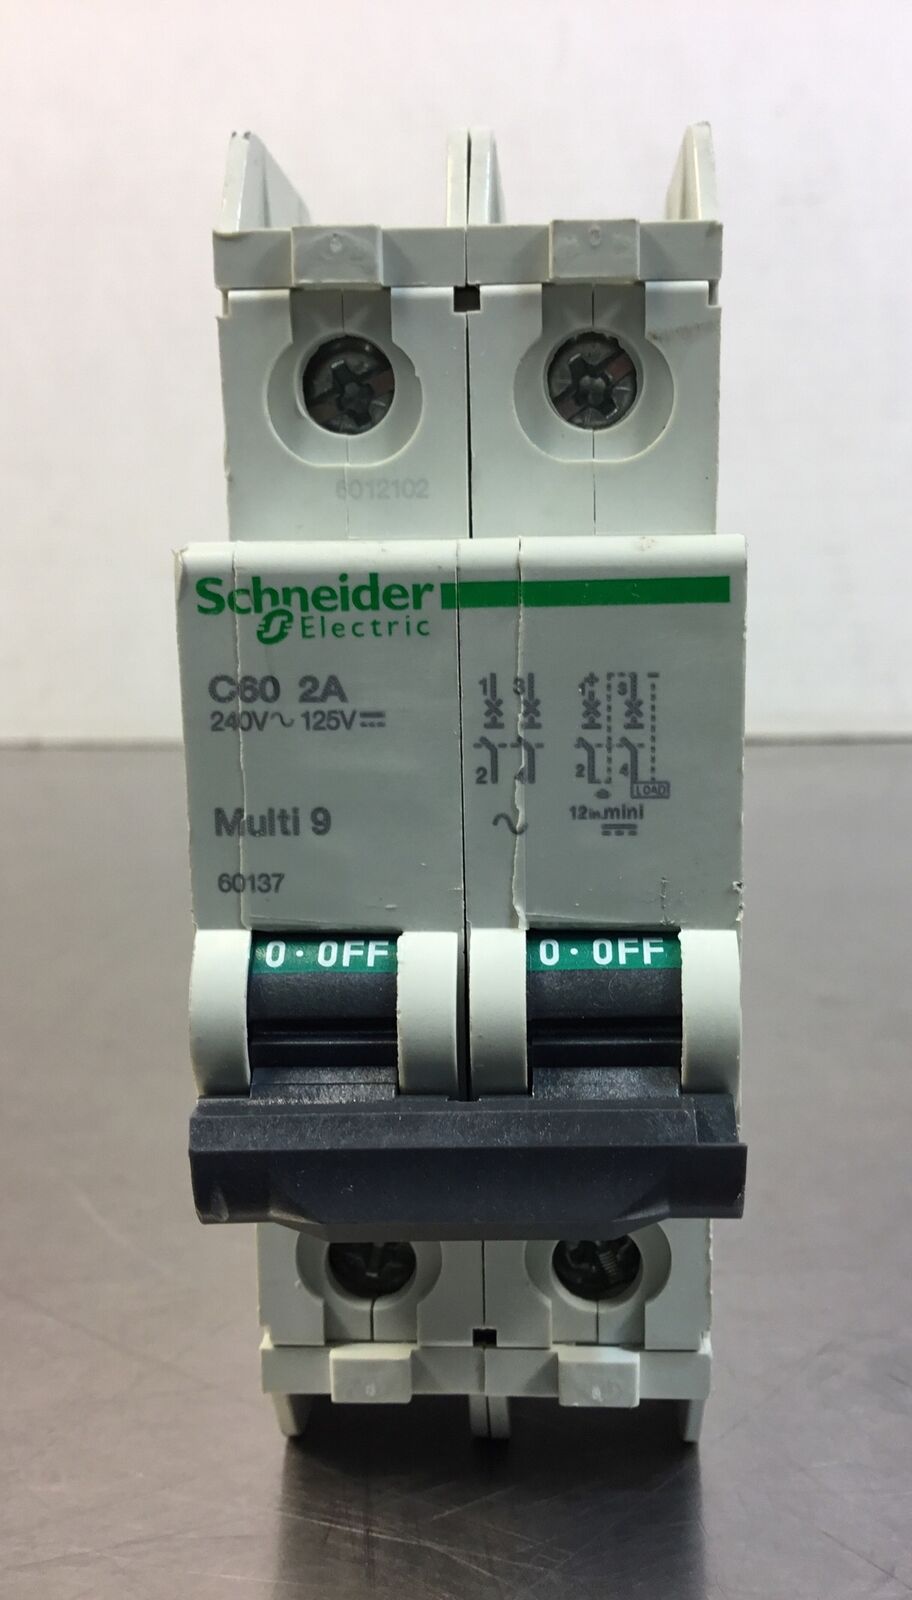 Schneider Electric 60137 Multi 9 Circuit Breaker C60 2A    4D